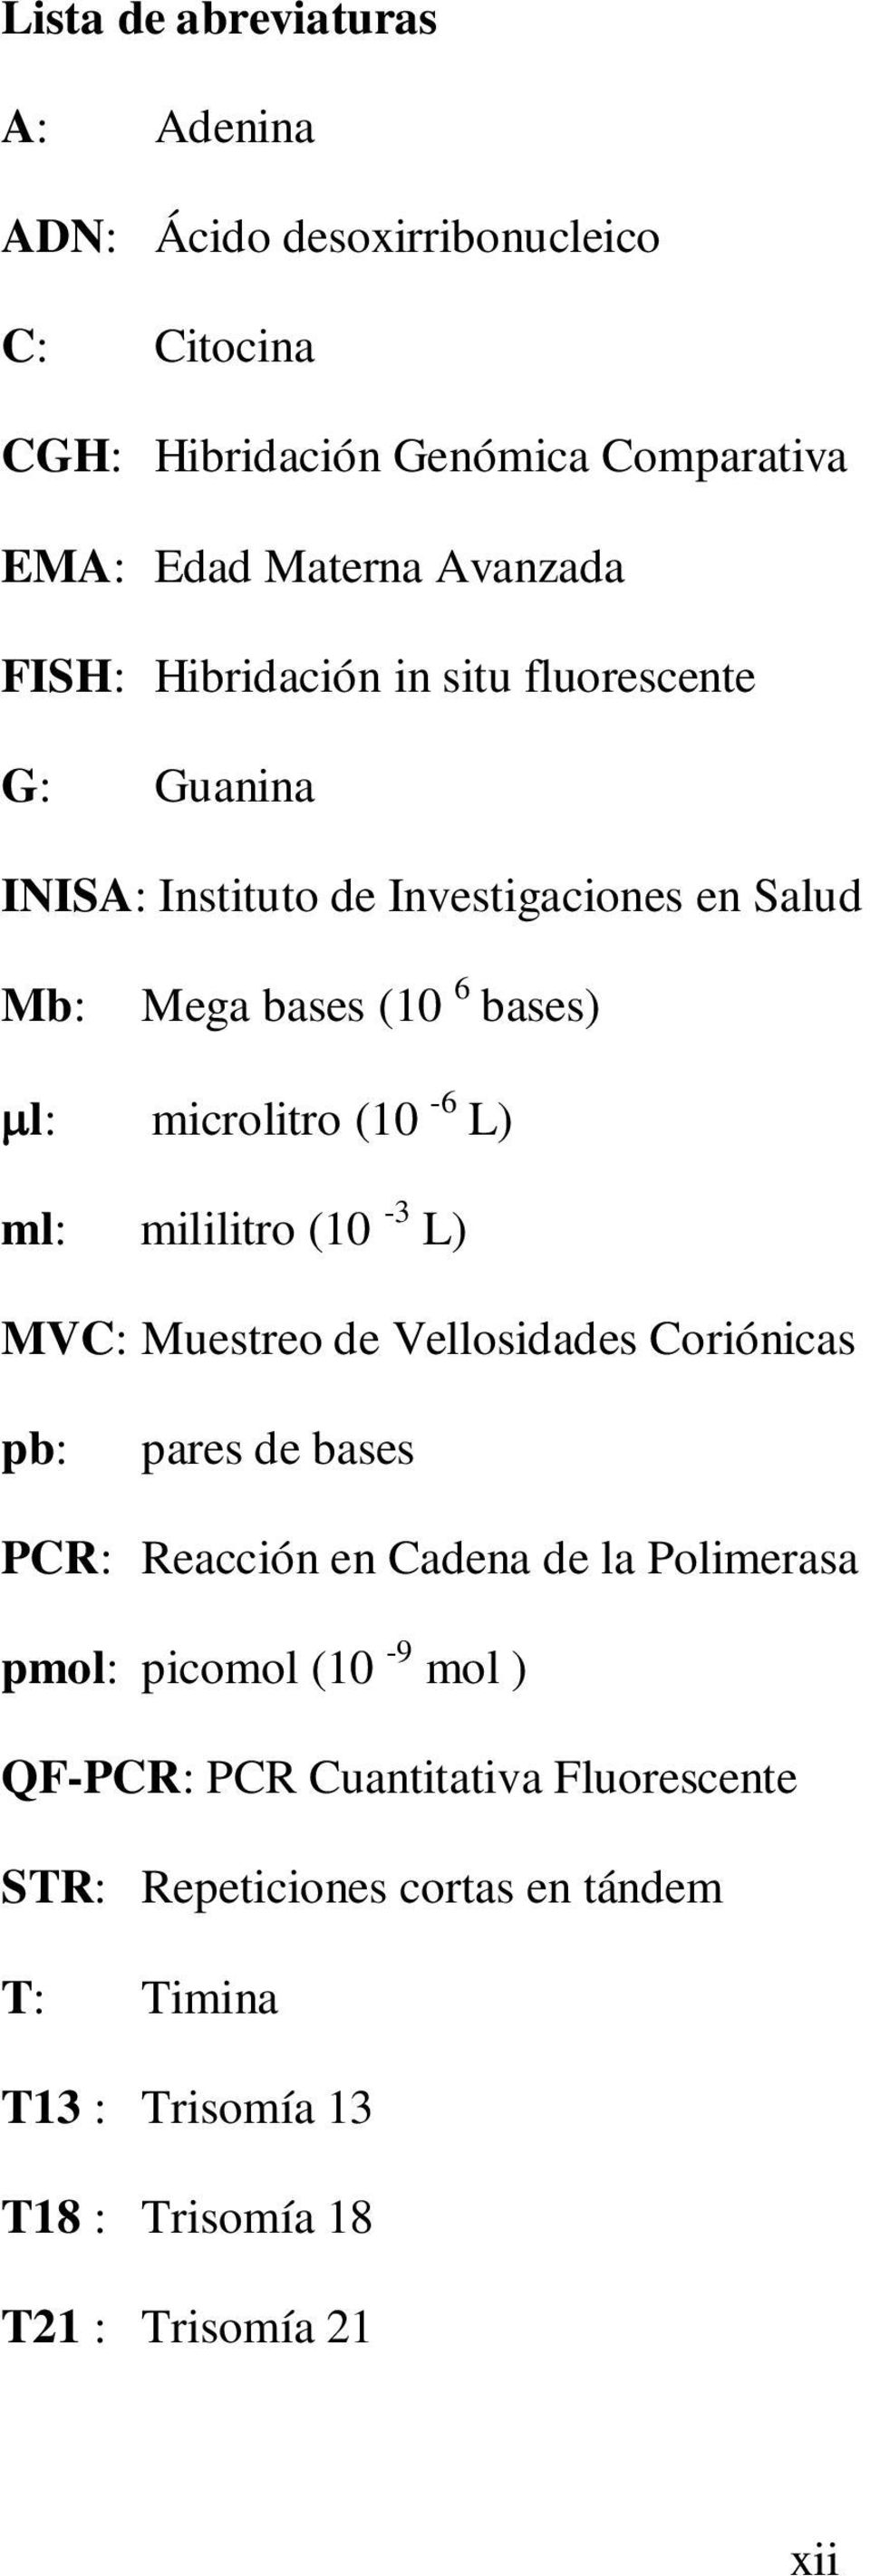 L) ml: mililitro (10-3 L) MVC: Muestreo de Vellosidades Coriónicas pb: pares de bases PCR: Reacción en Cadena de la Polimerasa pmol: picomol